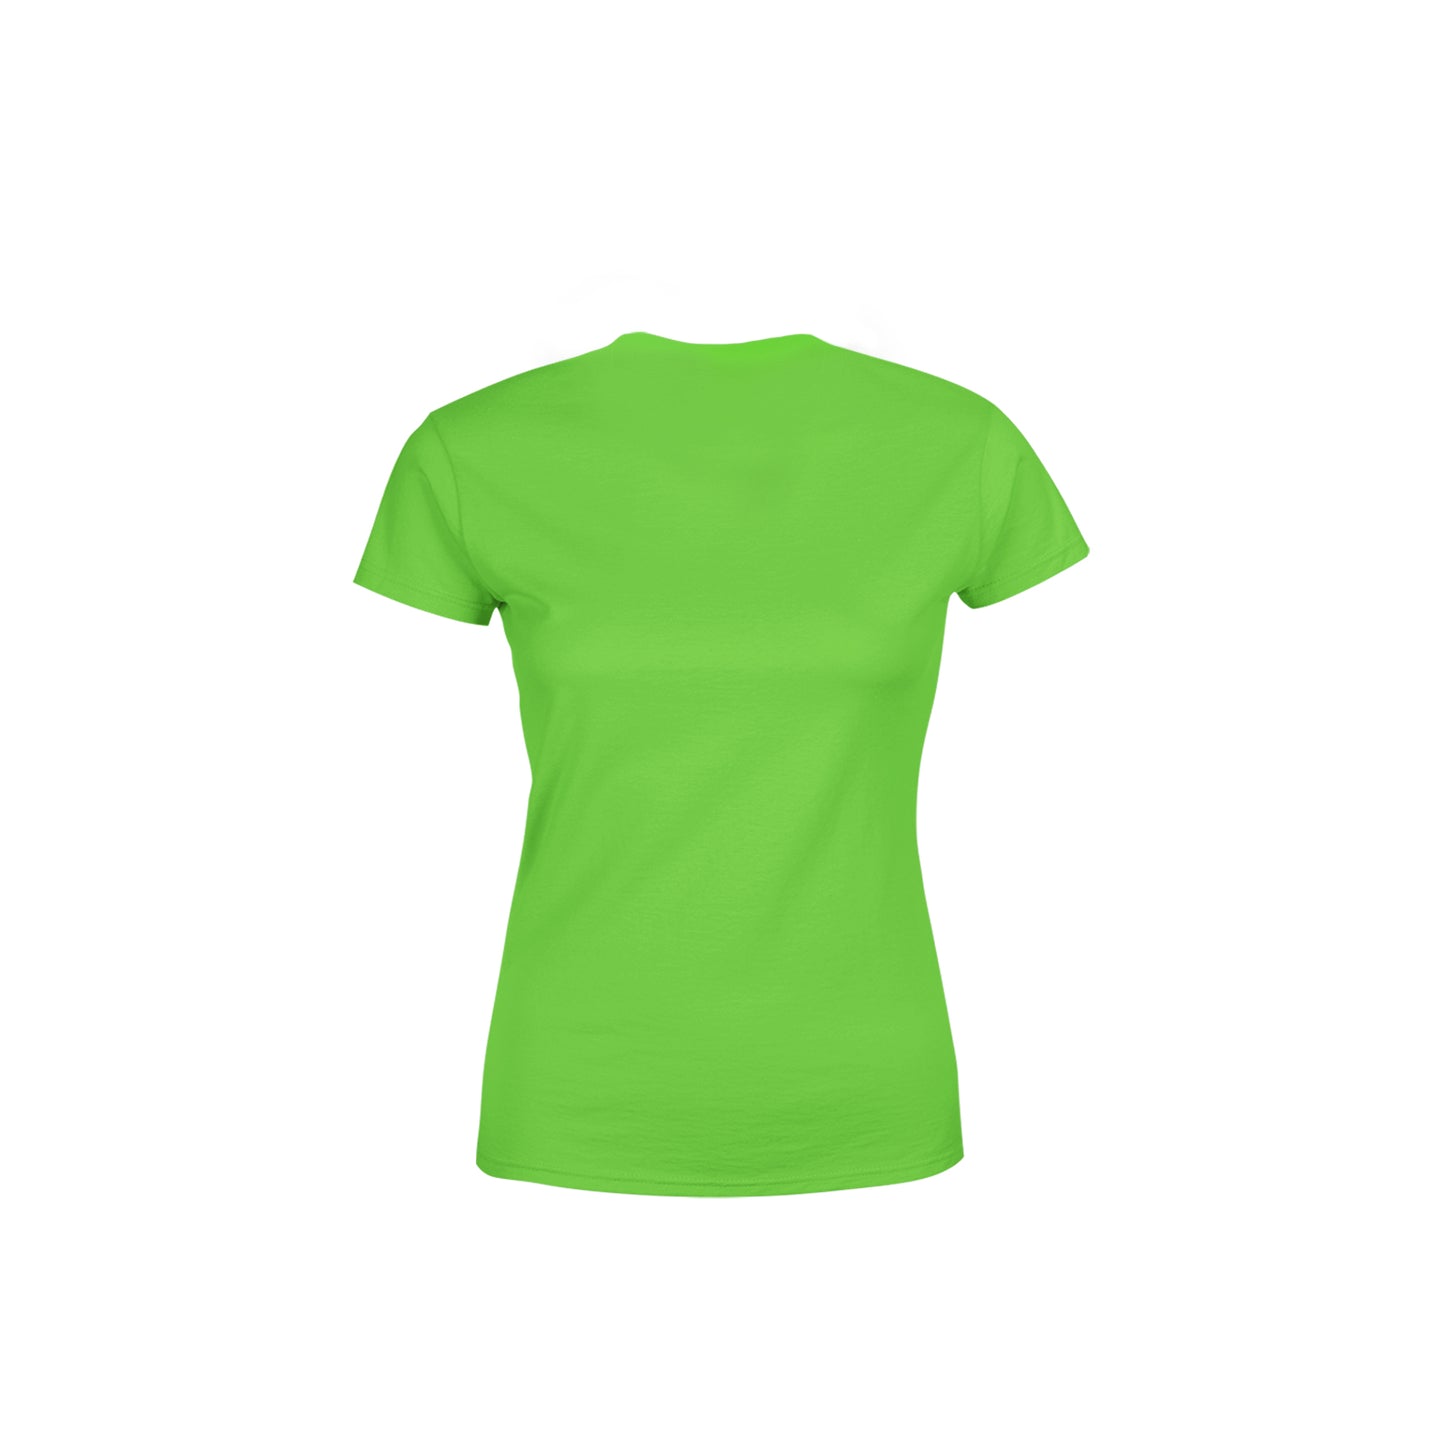 36 Number Women's T-Shirt (Liril Green)